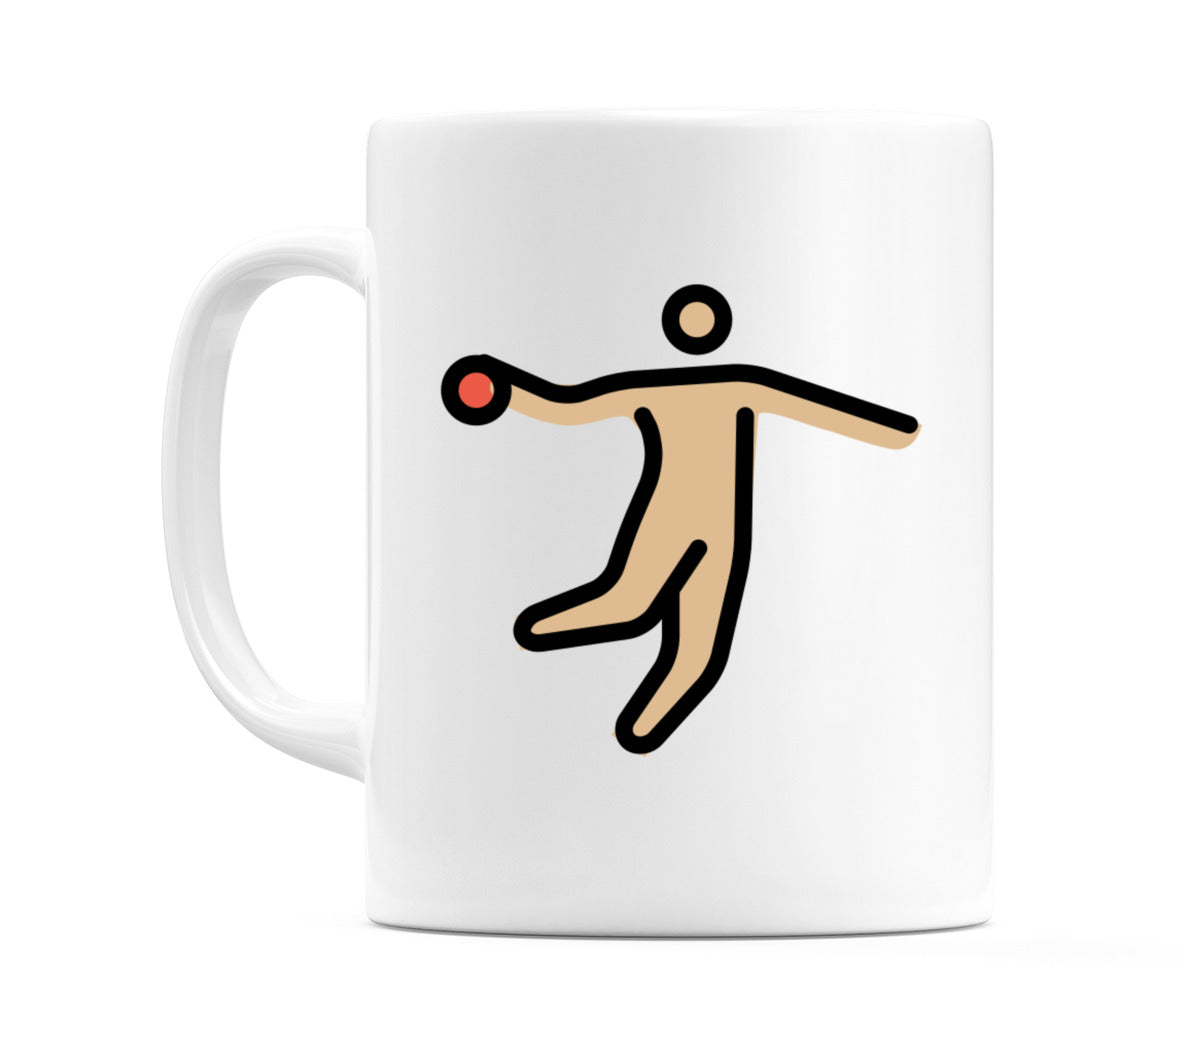 Person Playing Handball: Medium-Light Skin Tone Emoji Mug